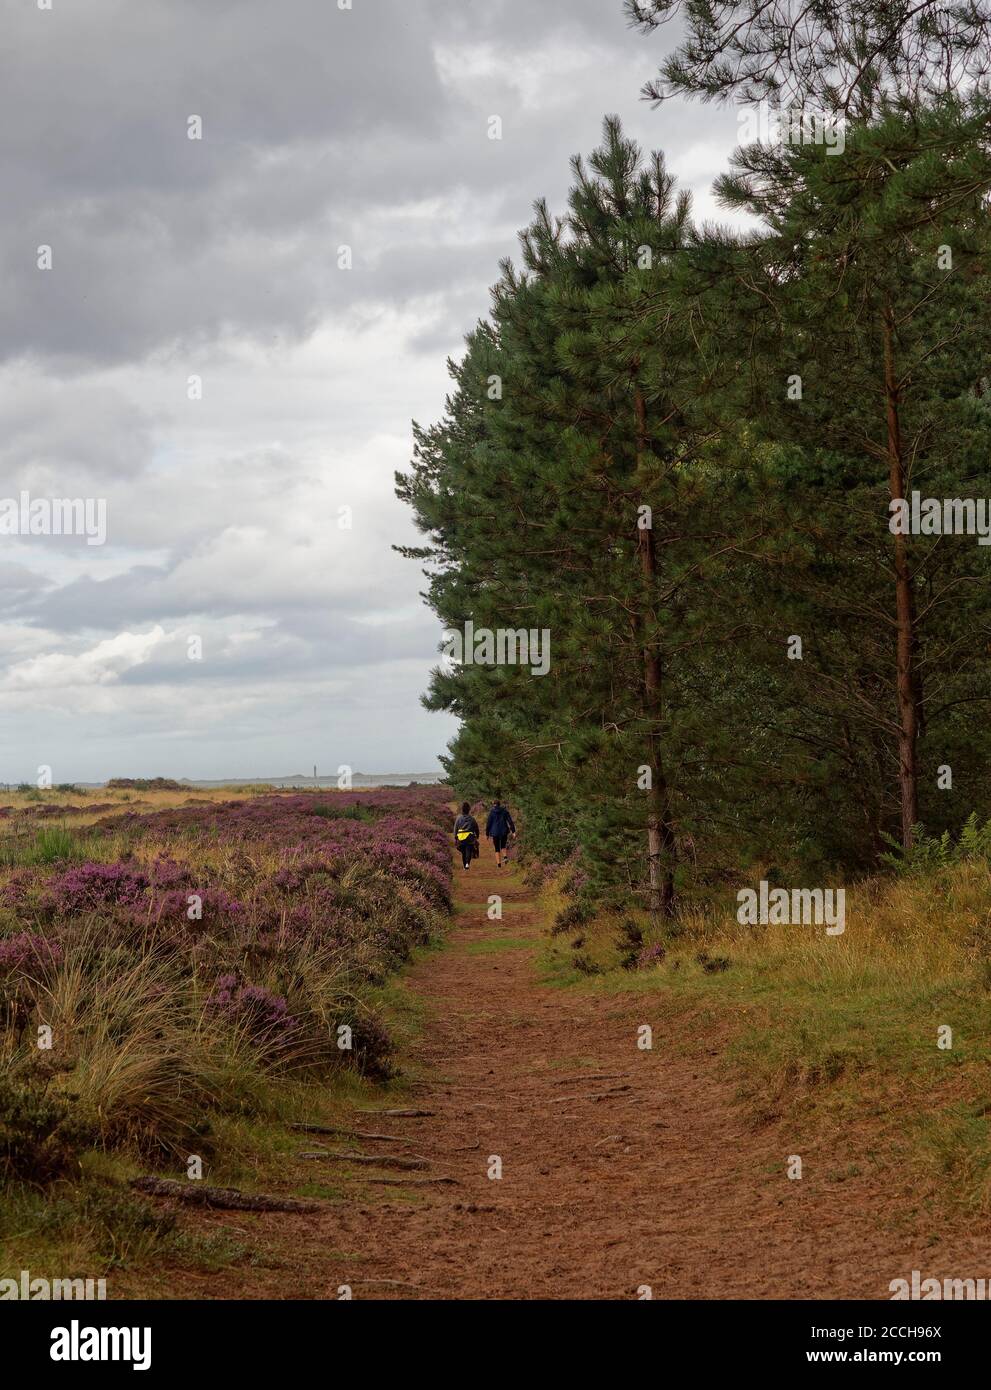 Zwei Wanderinnen auf dem Fußweg nach Leuchars rund um Tay Heath und Tentsmuir Forest an der Ostküste Schottlands an einem nassen Augusttag. Stockfoto